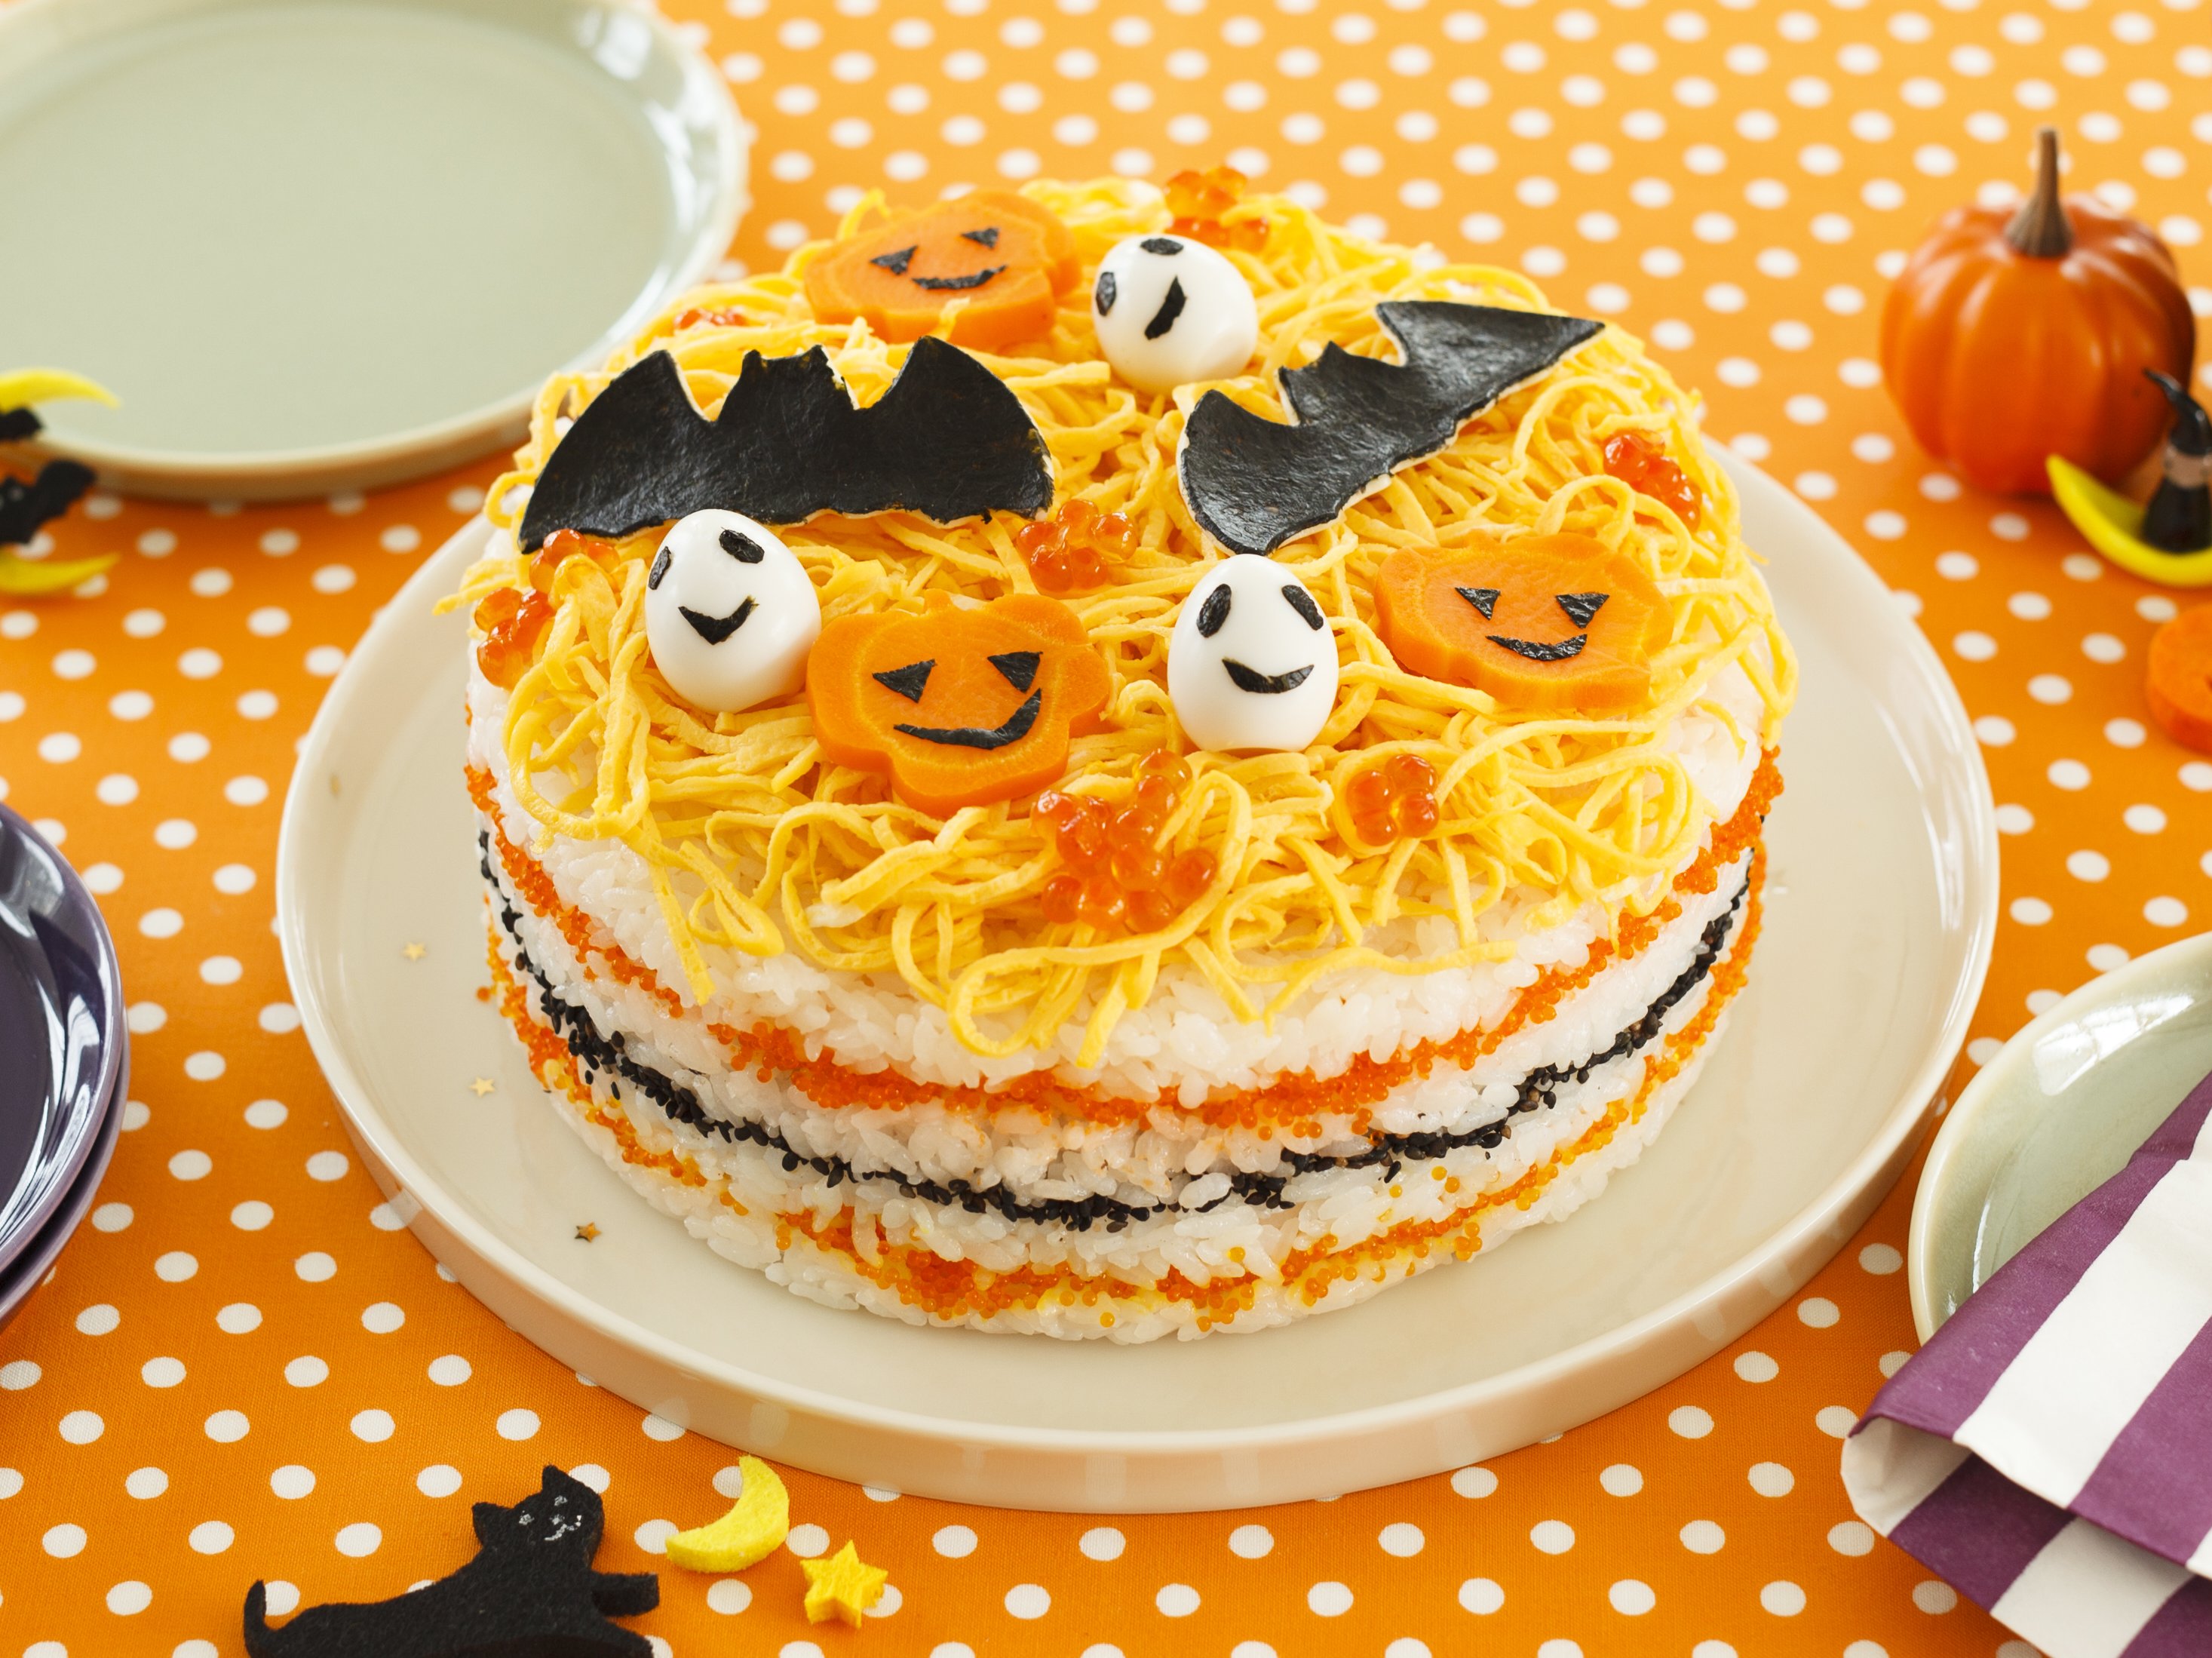 こうもりとかぼちゃのケーキすしのレシピ・作り方